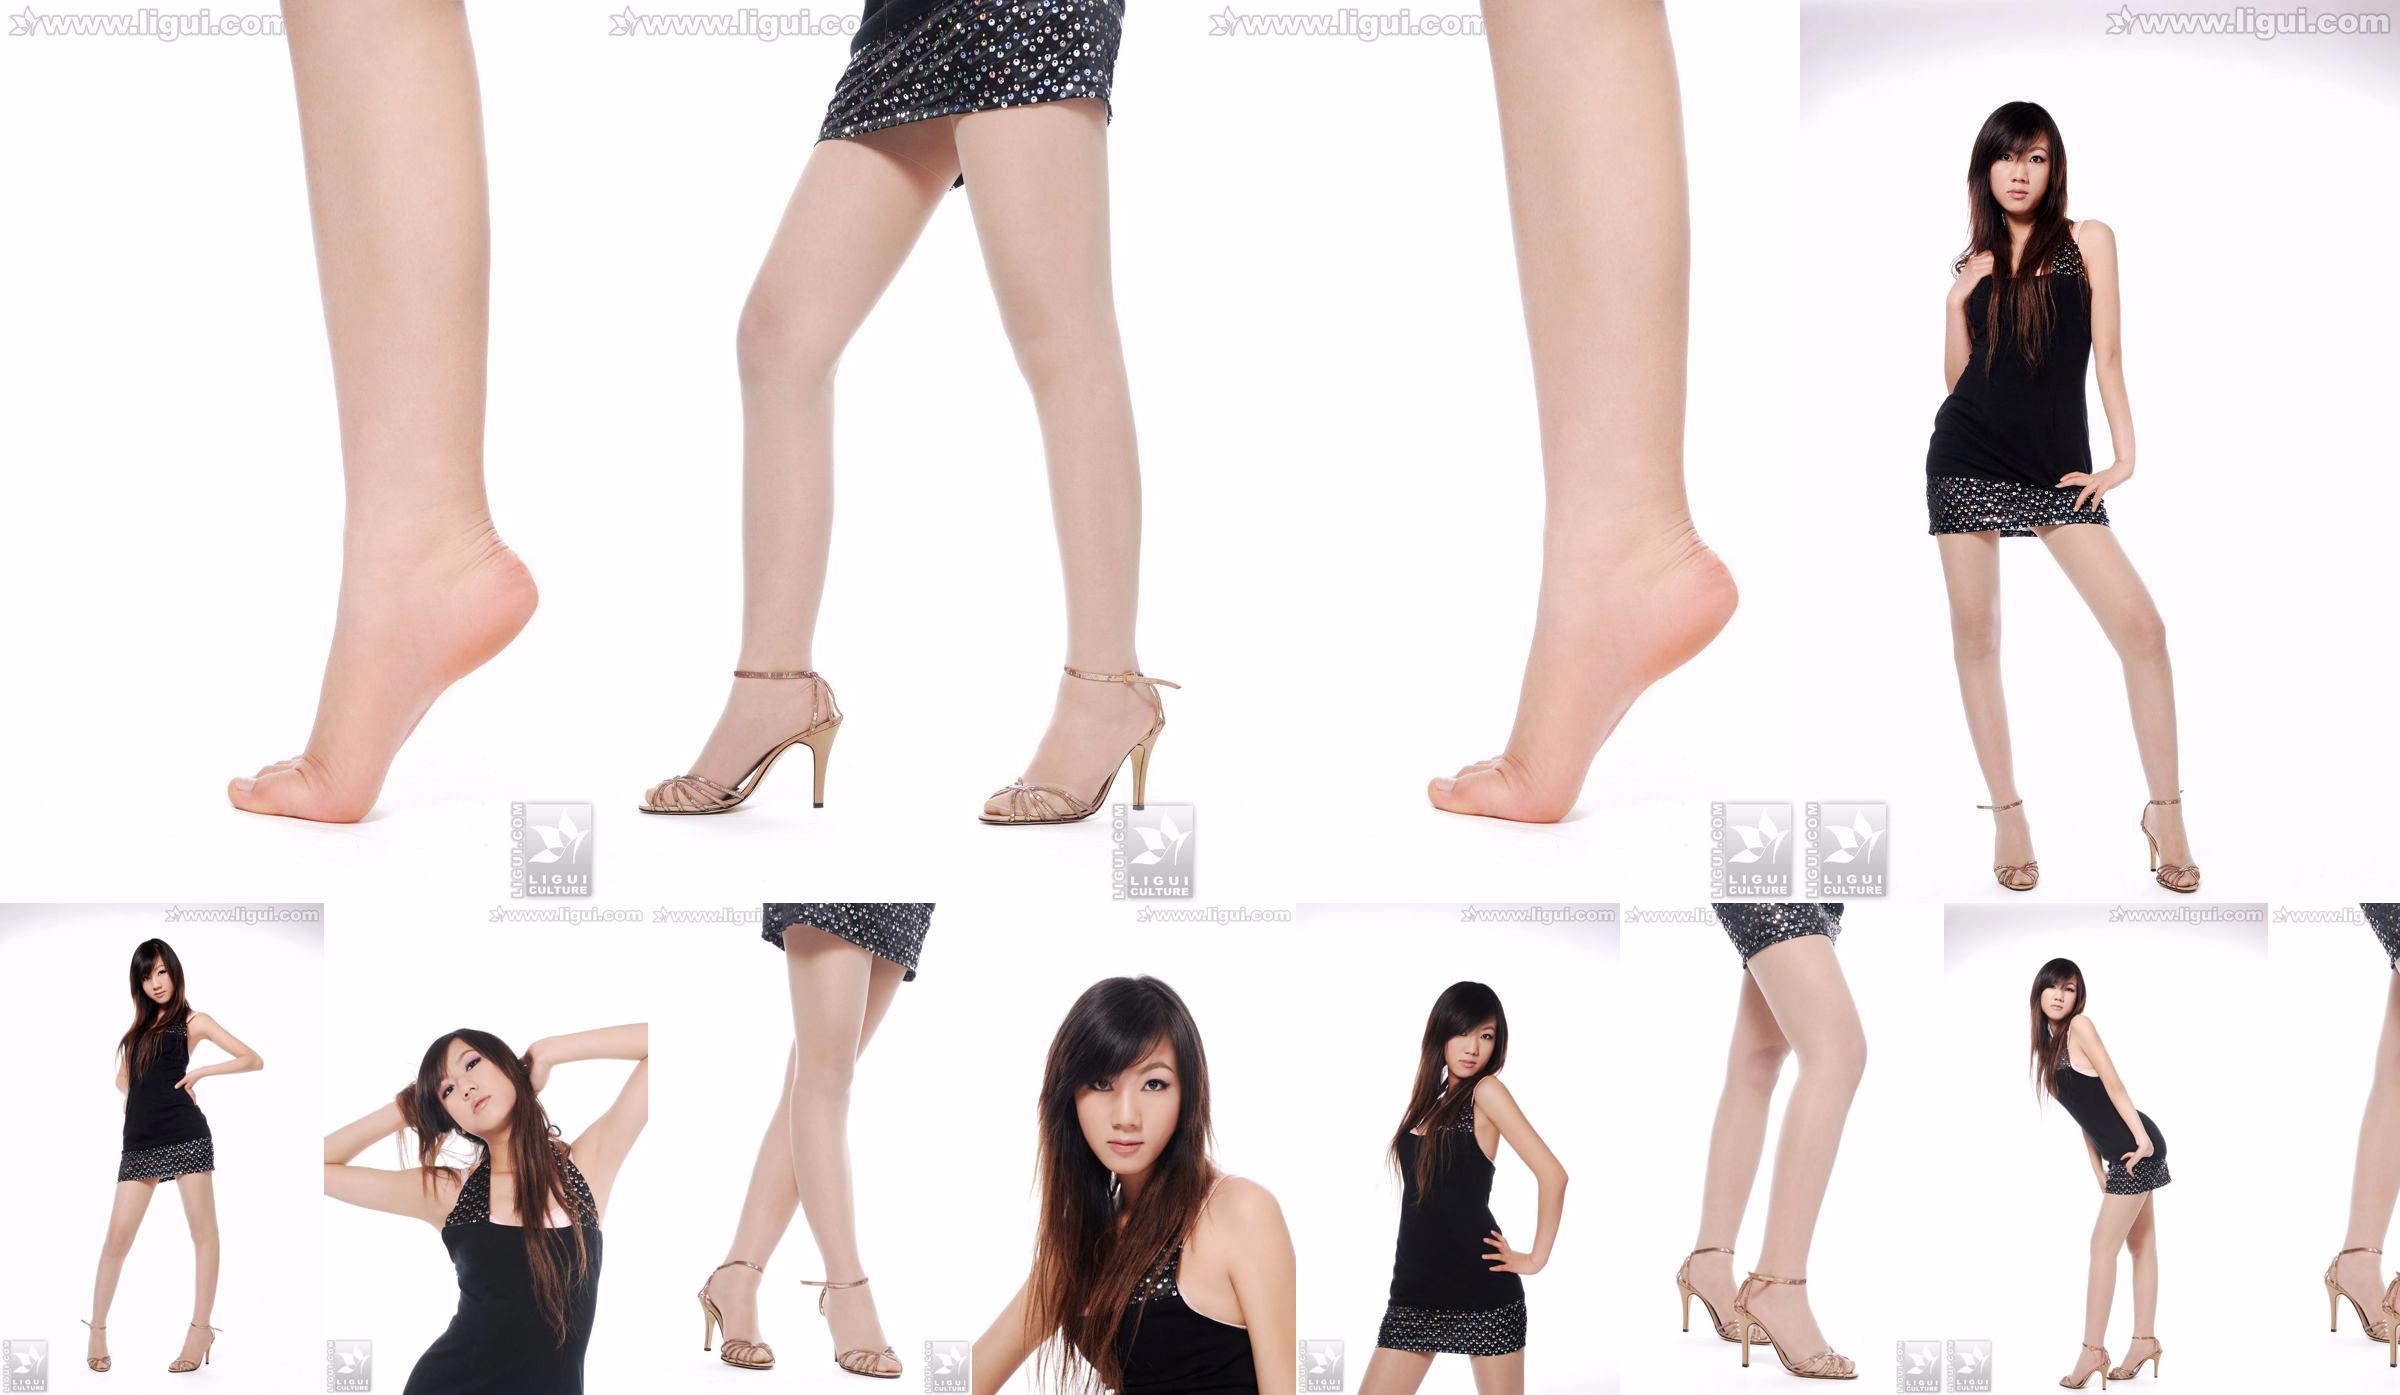 Modelo Sheng Chao "lindo novo show de pé de jade de salto alto" [Sheng LiGui] Foto de belas pernas e pé de jade No.dc11df Página 1